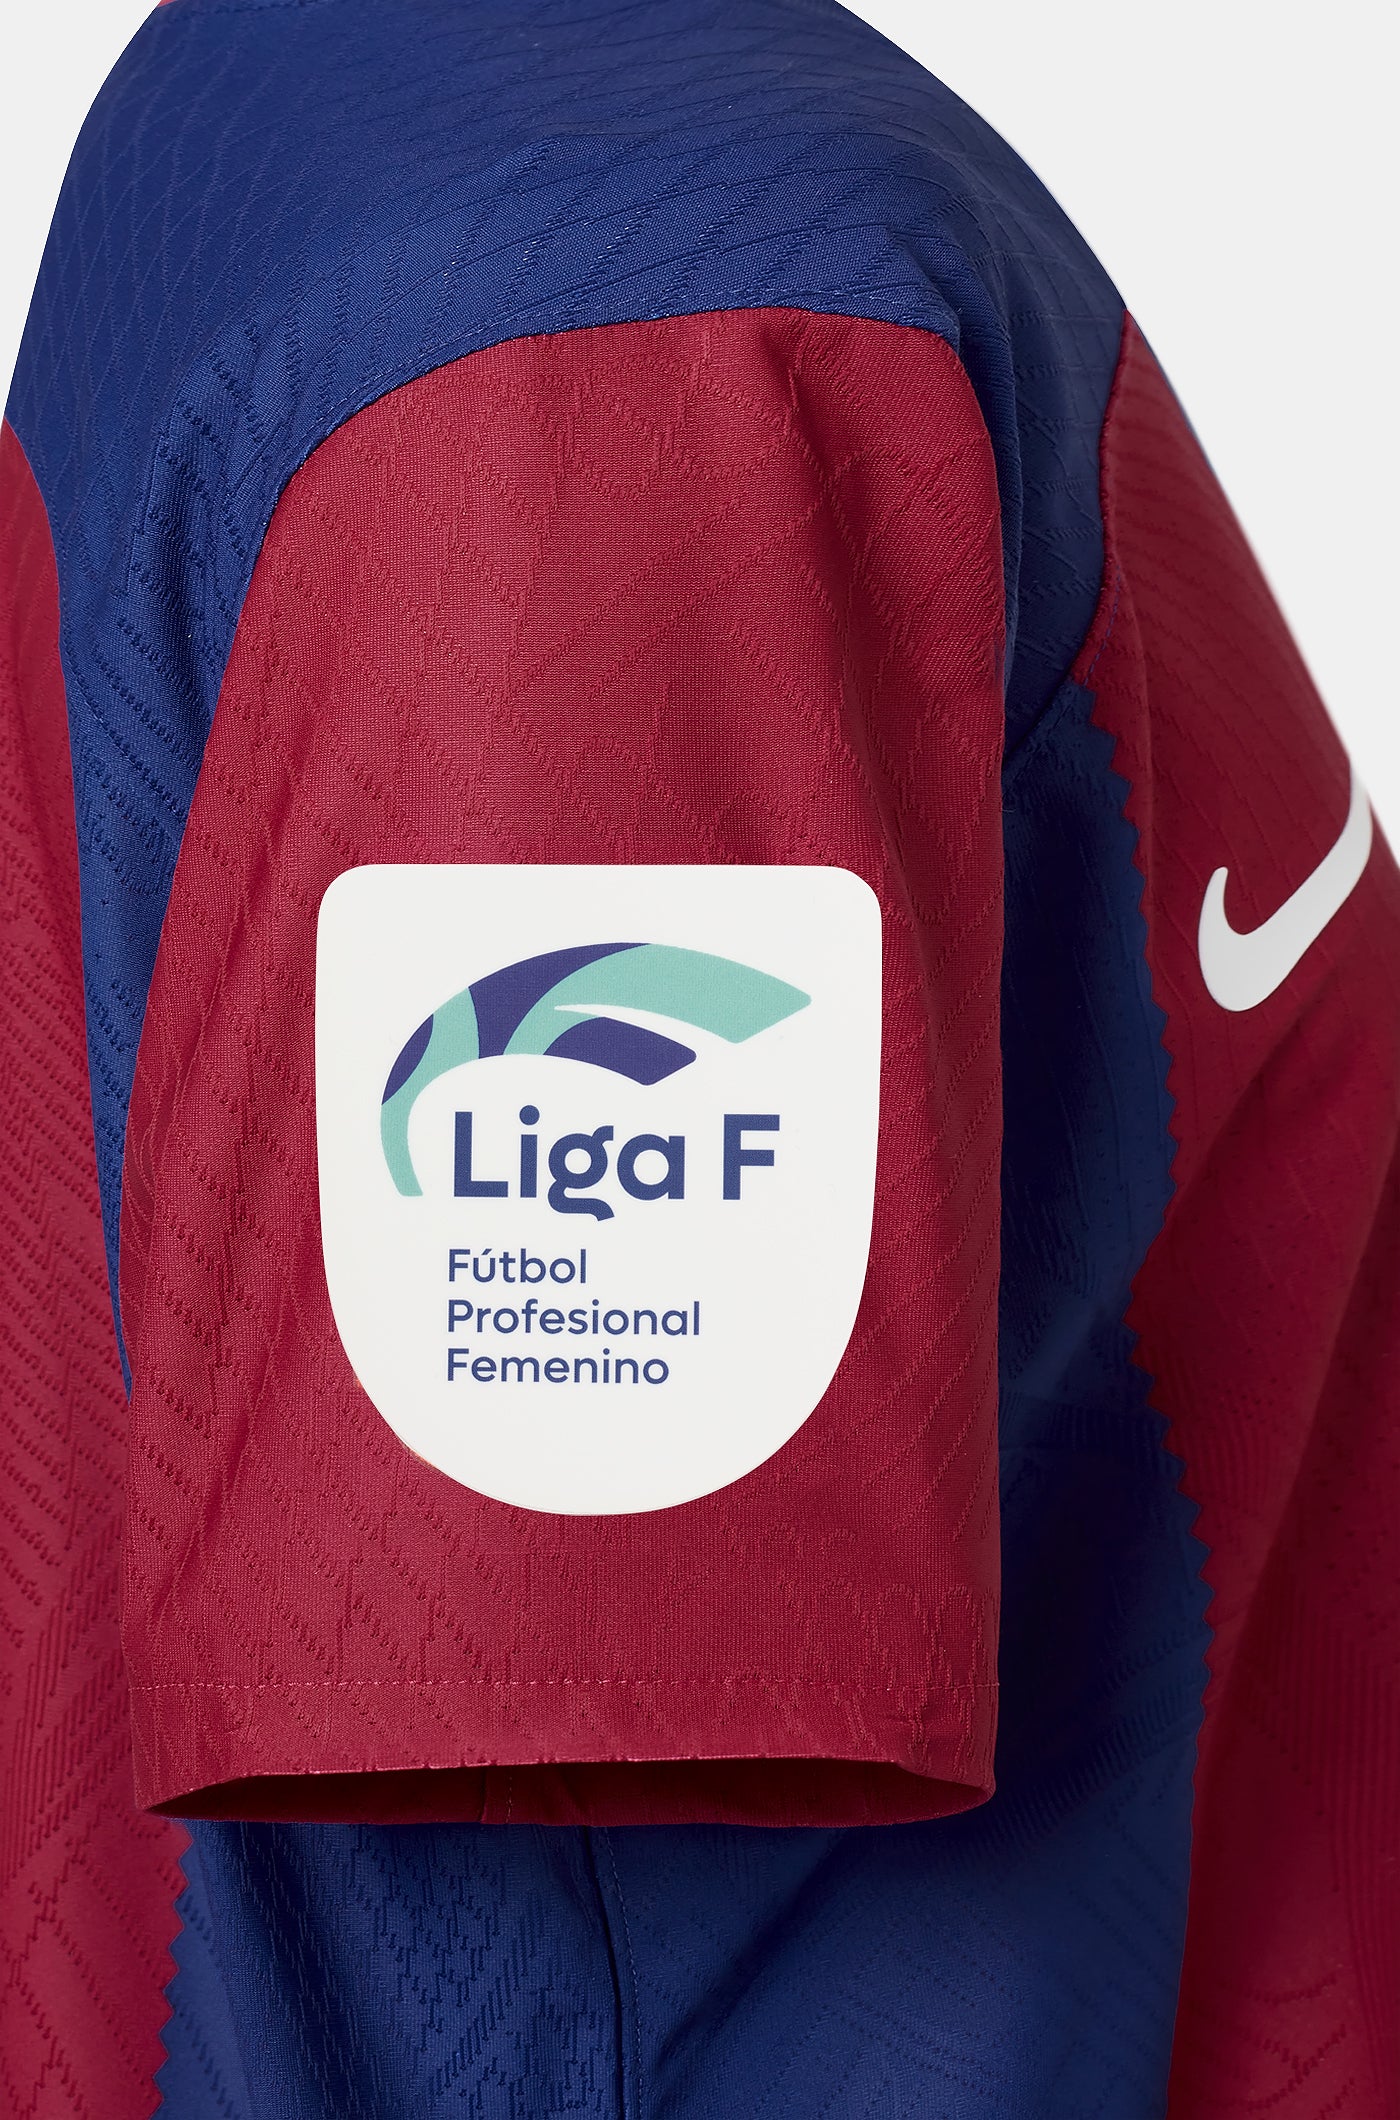 Limited-Edition-Trikot fur damen "Karol G“ mit den Unterschriften der Spieler des "El Clásico“ und der Spielerinnen des Spiels zwischen dem FC Barcelona und dem Villarreal